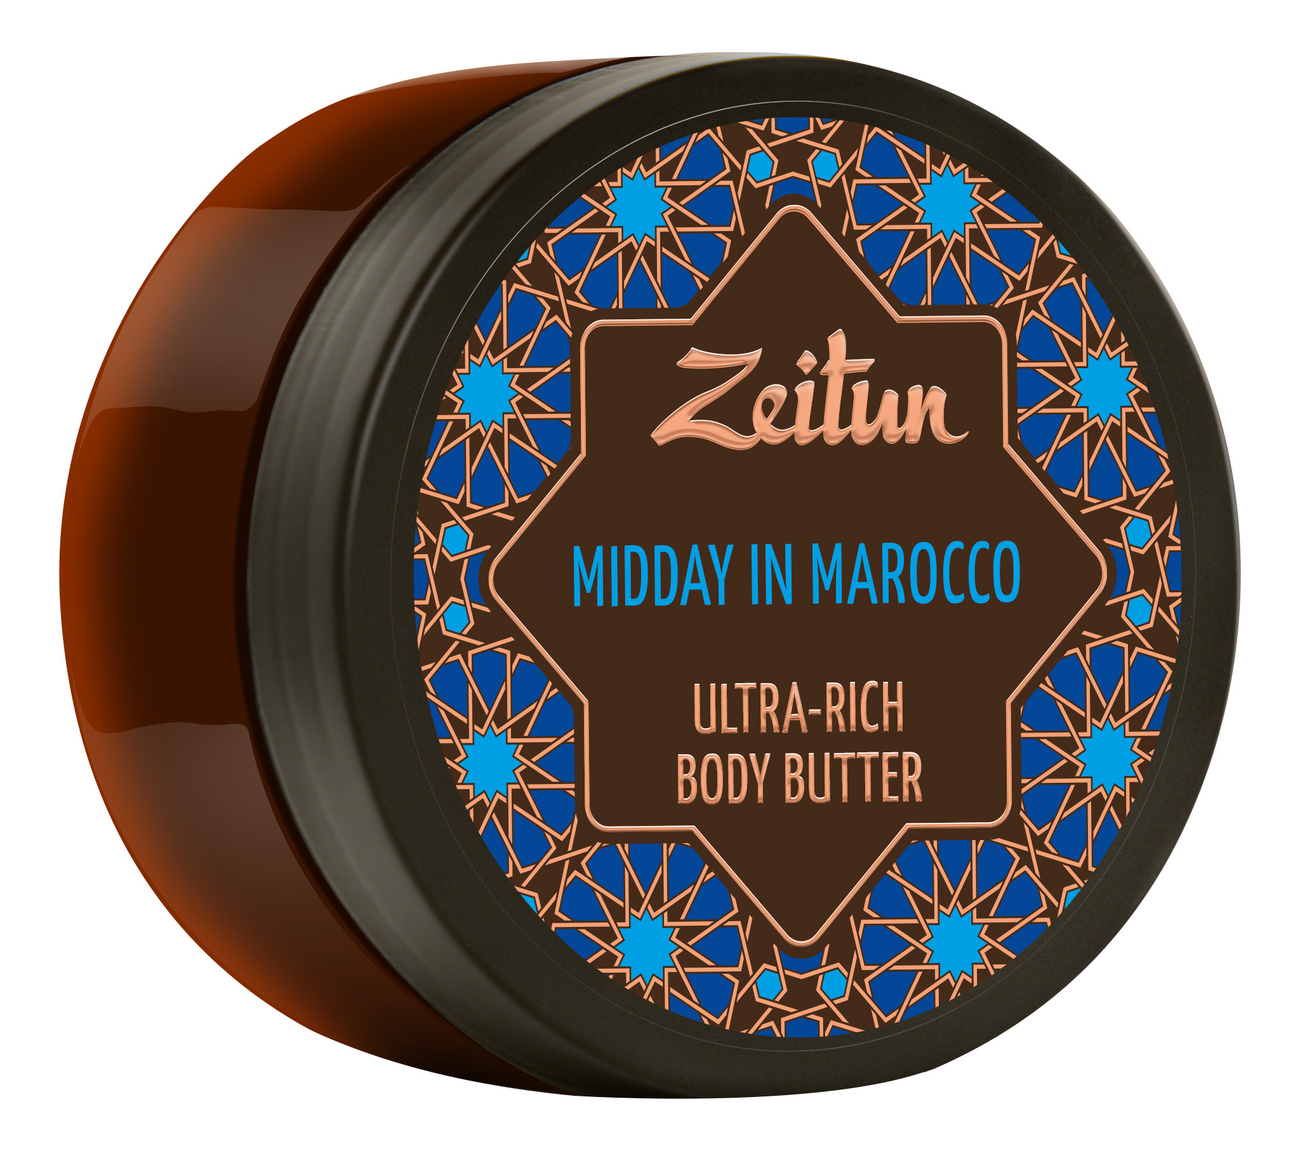 Крем-масло для тела Марокканский полдень Midday In Marocco Ultra-Rich Body Butter 200мл крем масло для тела марокканский полдень с лифтинг эффектом zeitun